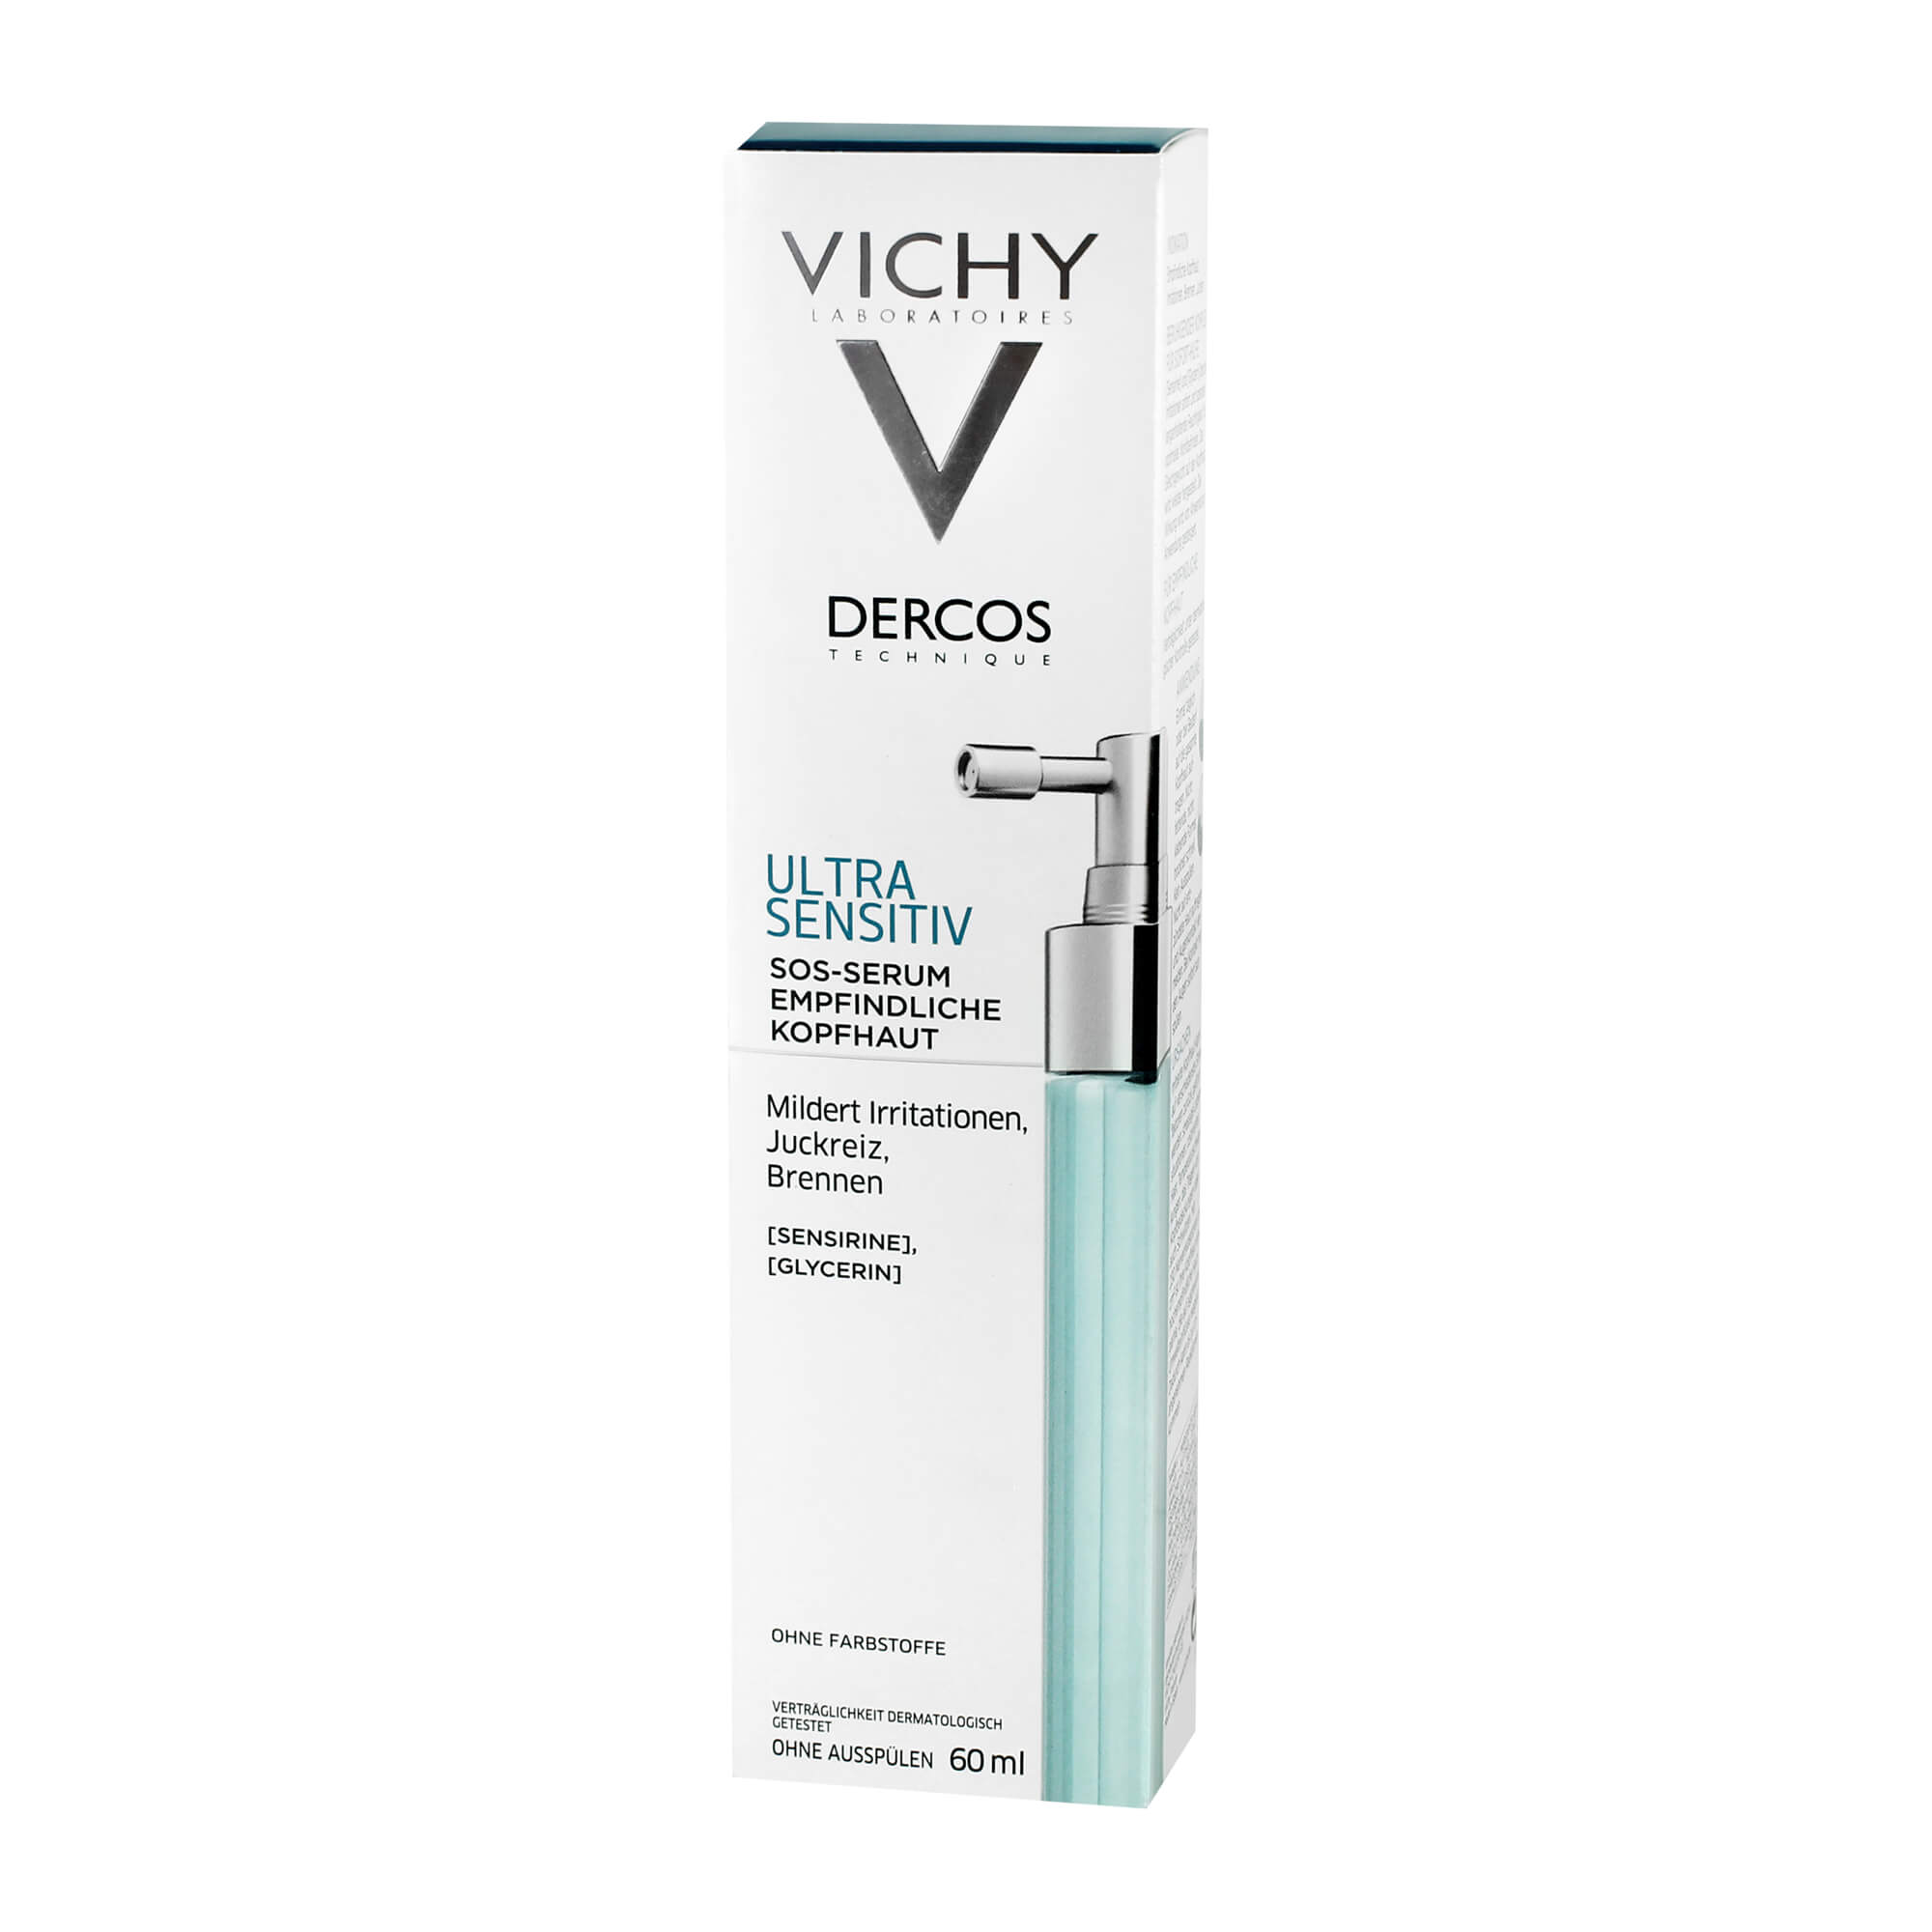 Vichy Dercos Ultra Sensitiv Serum für empfindliche Kopfhaut